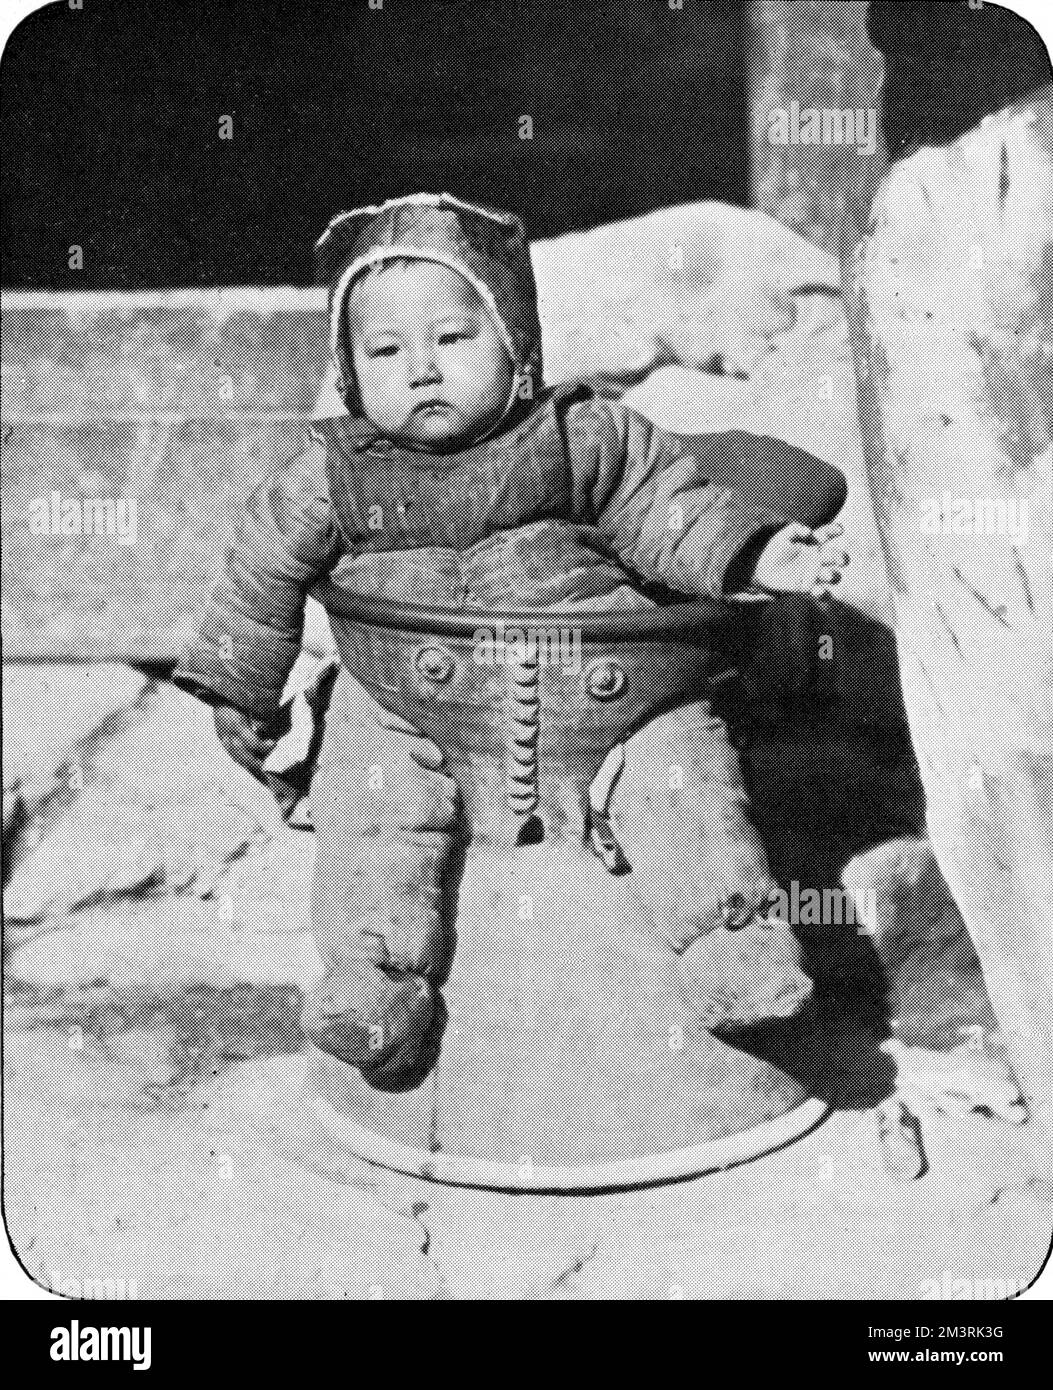 Eine offenbar beliebte Praxis in Henan, bei der Säuglinge in eine Bronzeschale gelegt wurden, während ihre Mutter weg war. Für das arme Kind ist eine Flucht unmöglich! 1927 Stockfoto